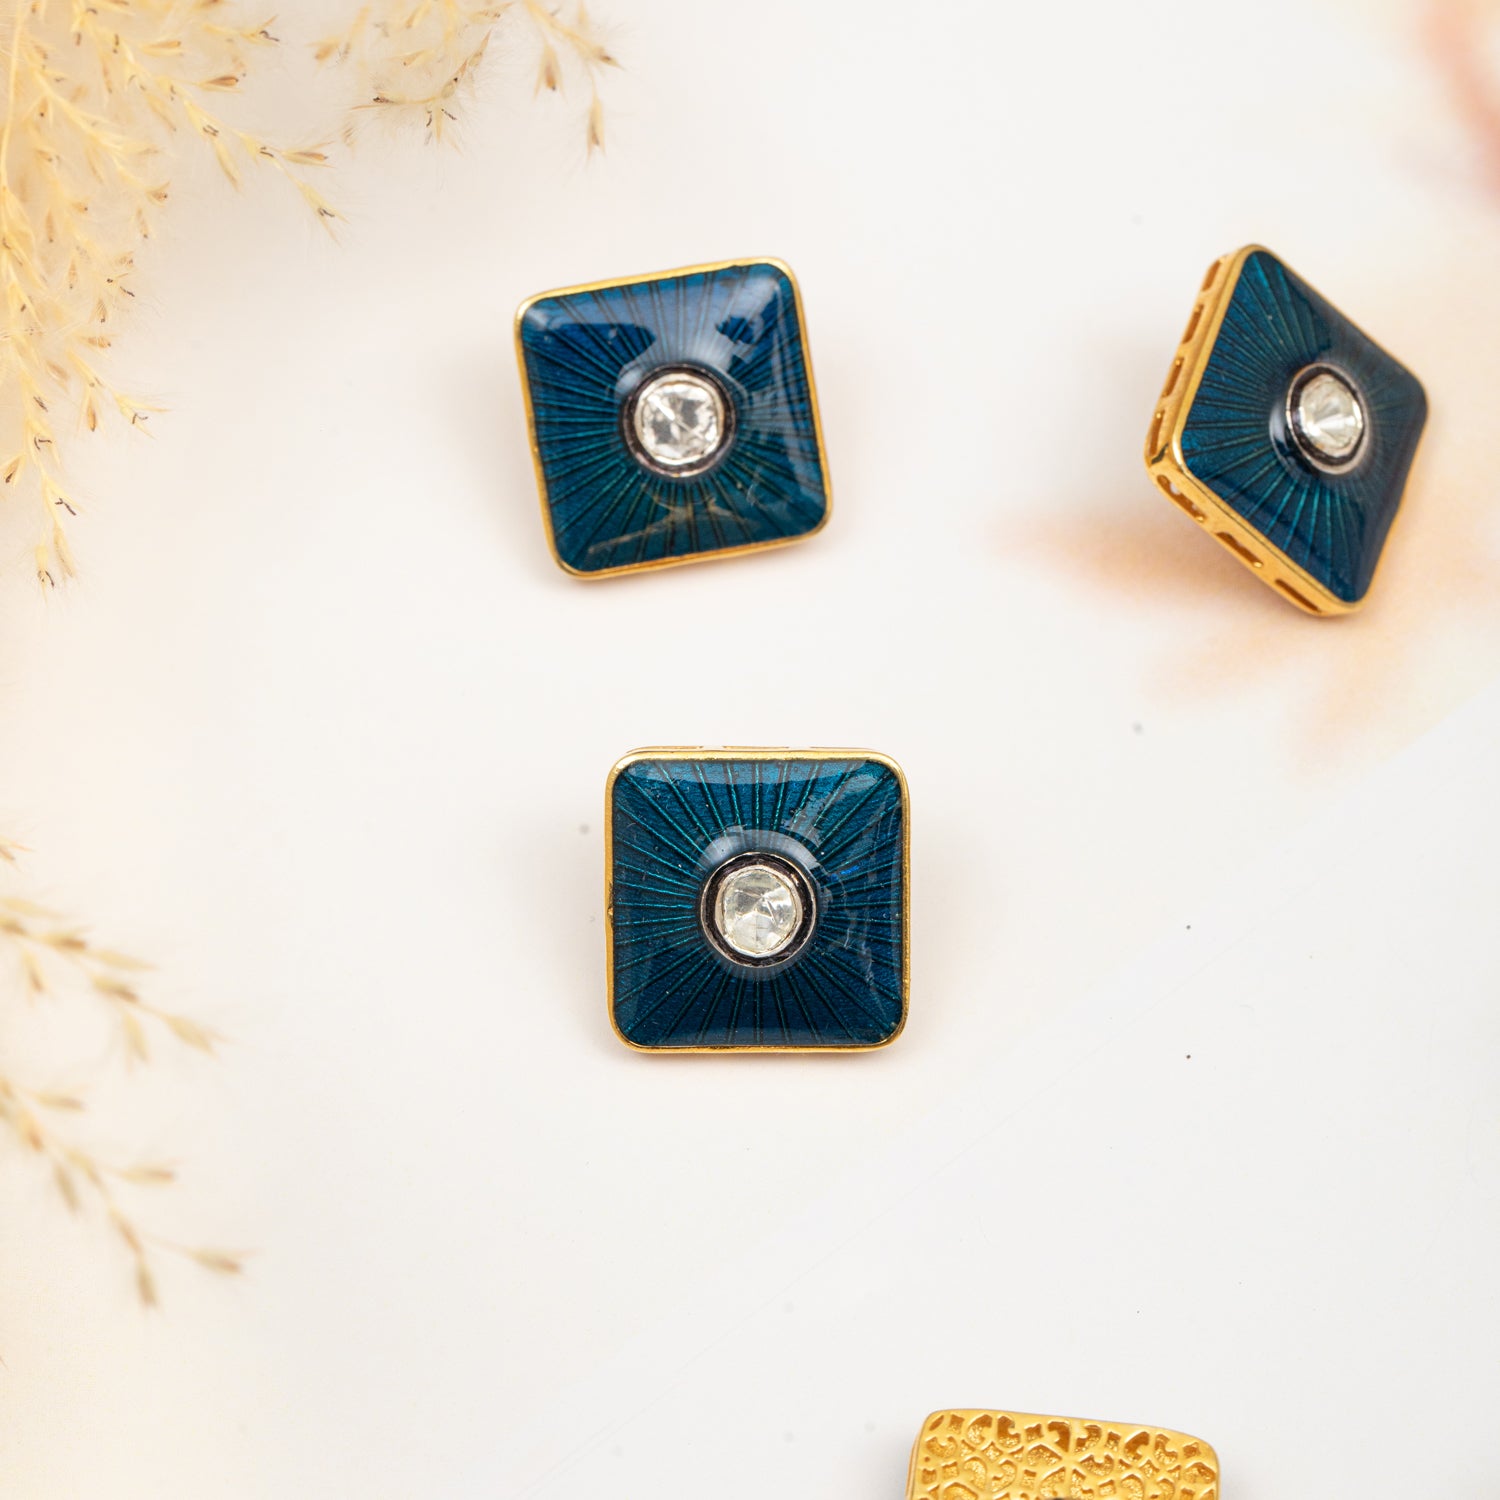 925 Silver Polki Diamond Buttons with Blue Enamel